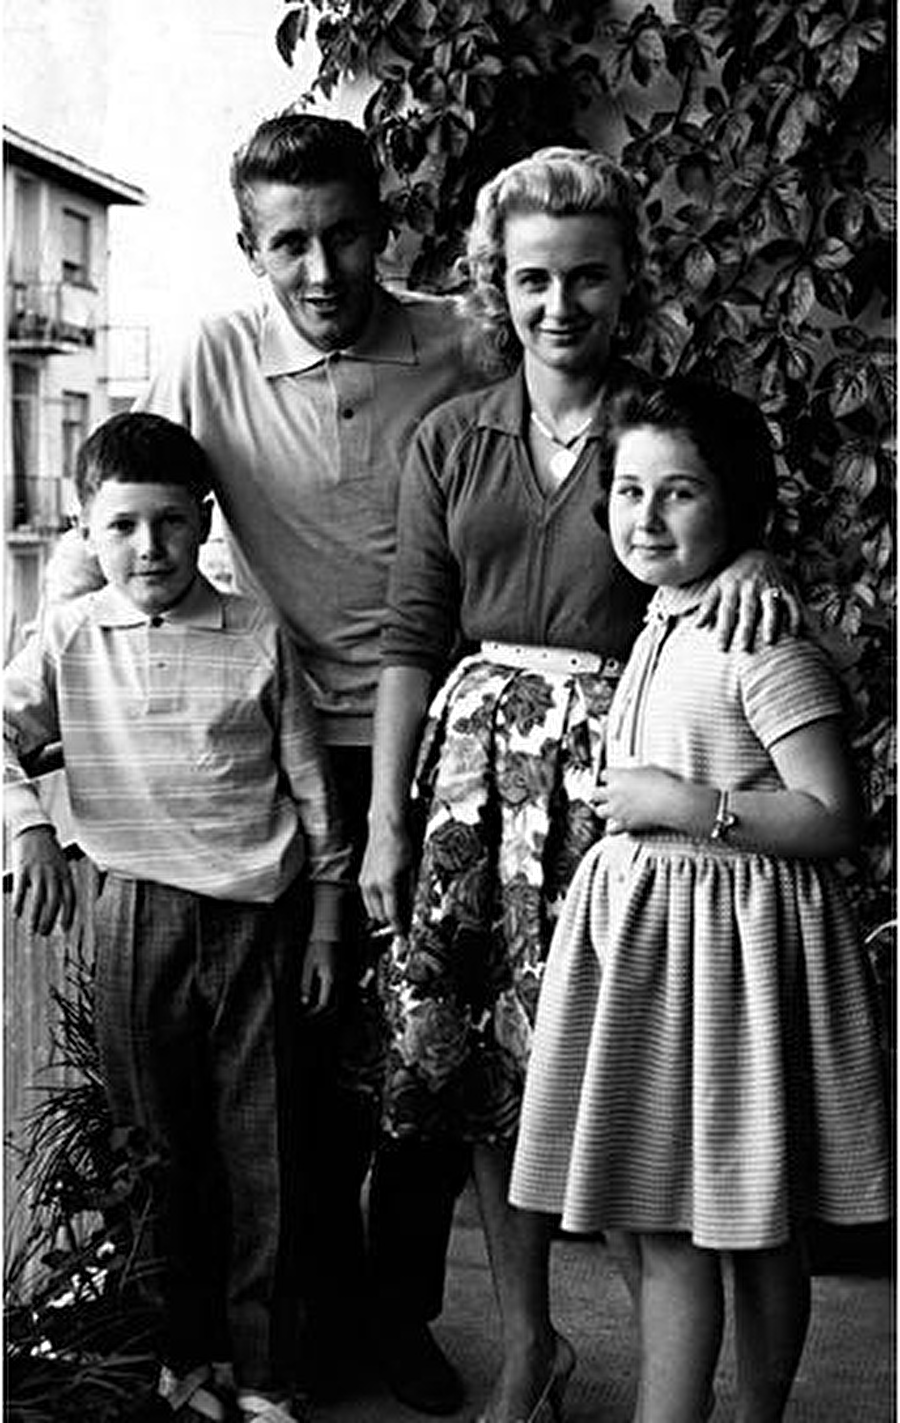 İlginç aile yapısı

                                    
                                    
                                    
                                    Jacques Anquetil'in eşi Jeanine Anquetil'in ilk evliliğinden iki çocuğu vardı. Ancak Jeanine Anquetil, geçirdiği bir hastalıktan dolayı çocuk sahibi olamıyordu. Bu durum ise ünlü sporcuyu derinden etkilemişti. Aile bu duruma kendi içinde çözüm buldu. Jeanine Anquetil, ilk evliliğinden olan kızı ile kocasının bir bebeği olmasına onay verdi. Dünyaya gelen Sophie, Jacques Anquetil'in hem kızı hem de üvey torunu oldu. Anquetil Ailesi'nin en büyük sırı bununla da bitmiyor.  Jacques Anquetil, 1987'de üvey oğlunun hanımdan da bir erkek çocuk sahibi oldu.
                                
                                
                                
                                